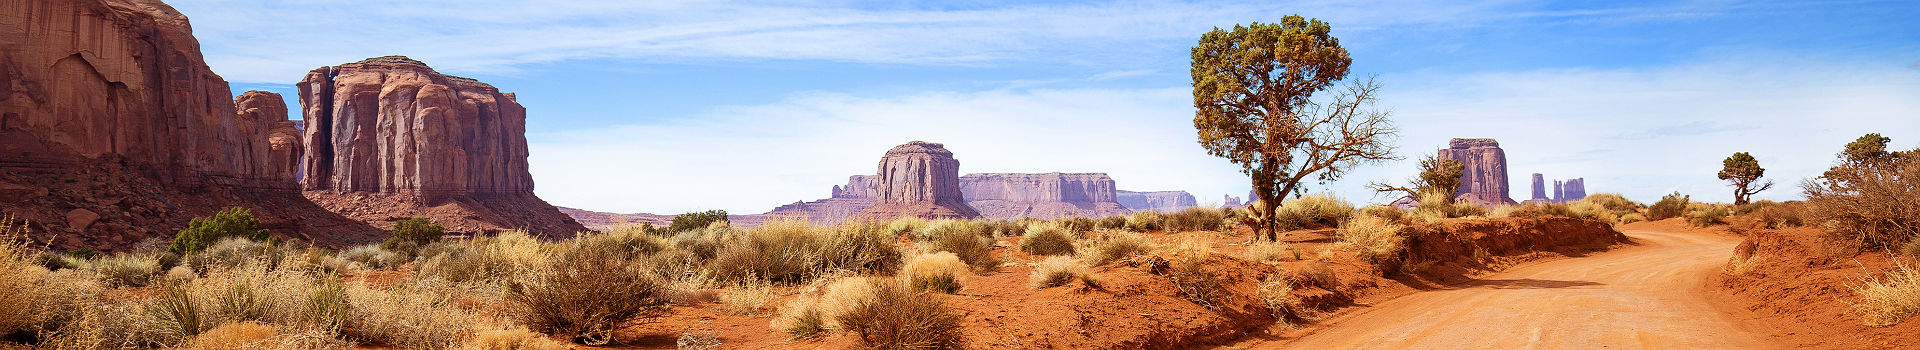 Etats-Unis - Vue sur les plateaux de Monument Valley